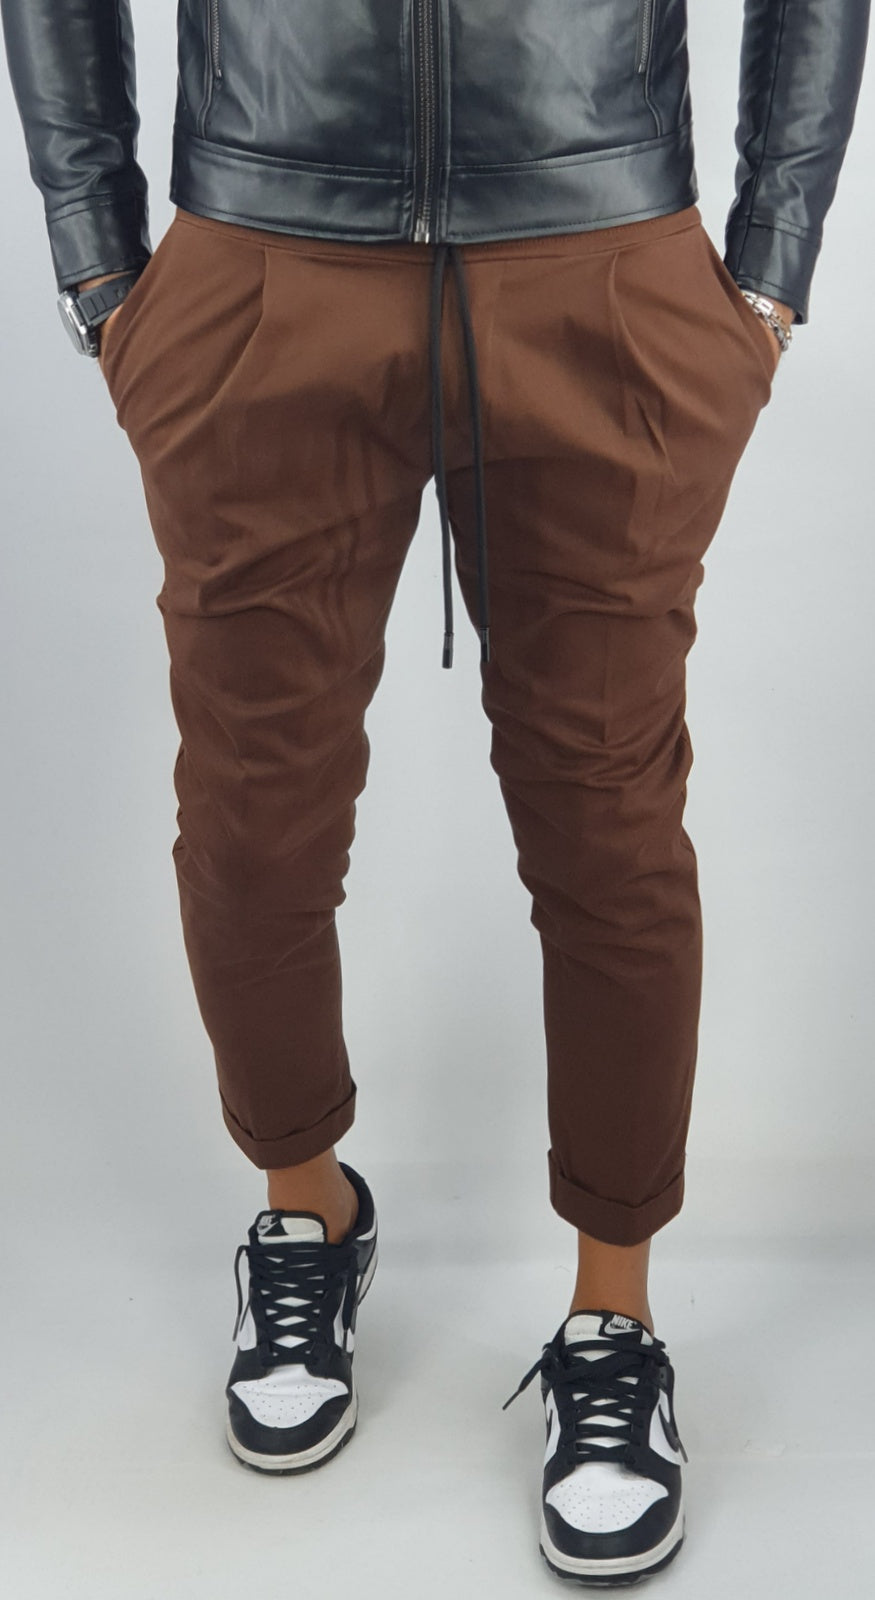 Pantalone Uomo Cotone Elastico Capri Invernale Tasche Americane Casual Pence